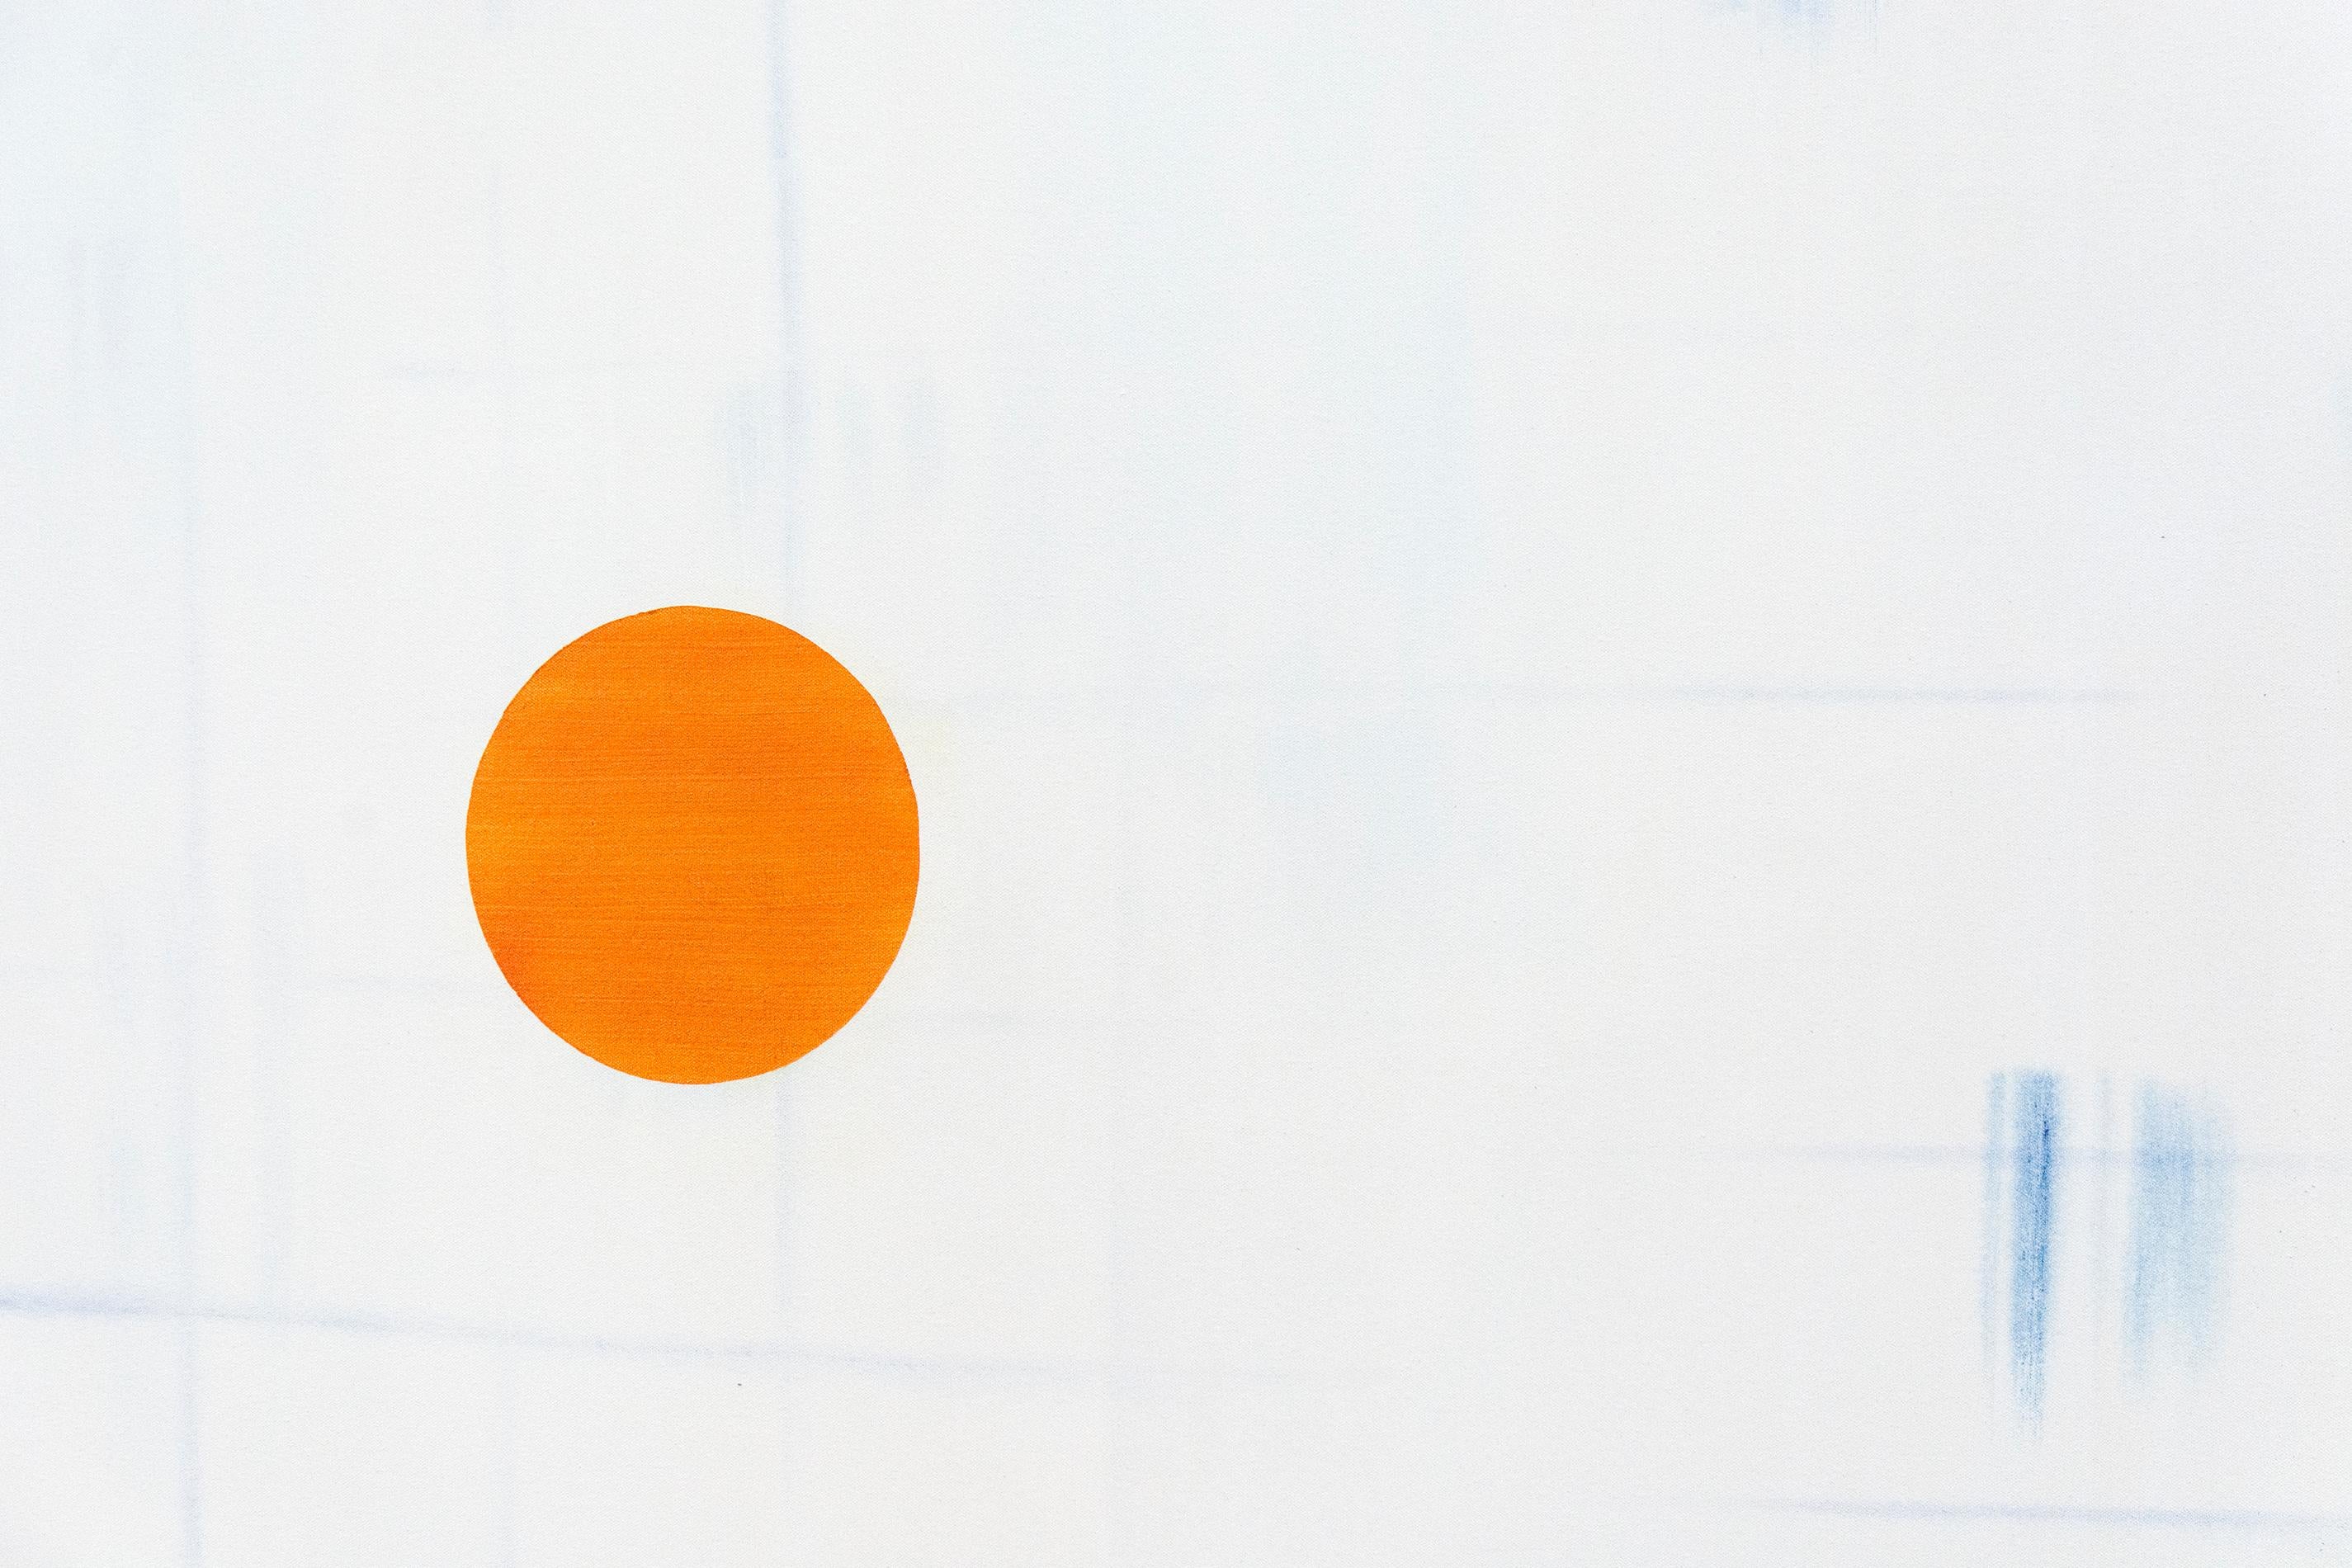 Ristvedt erforscht das emotionale Potenzial von Farbe und Form - orangefarbene und saphirblaue Kugeln schweben auf einem blassen Grund. Ein hellblaues Raster unterstreicht die Natur der Bildebene in dieser meisterhaften Komposition. 

Milly Ristvedt